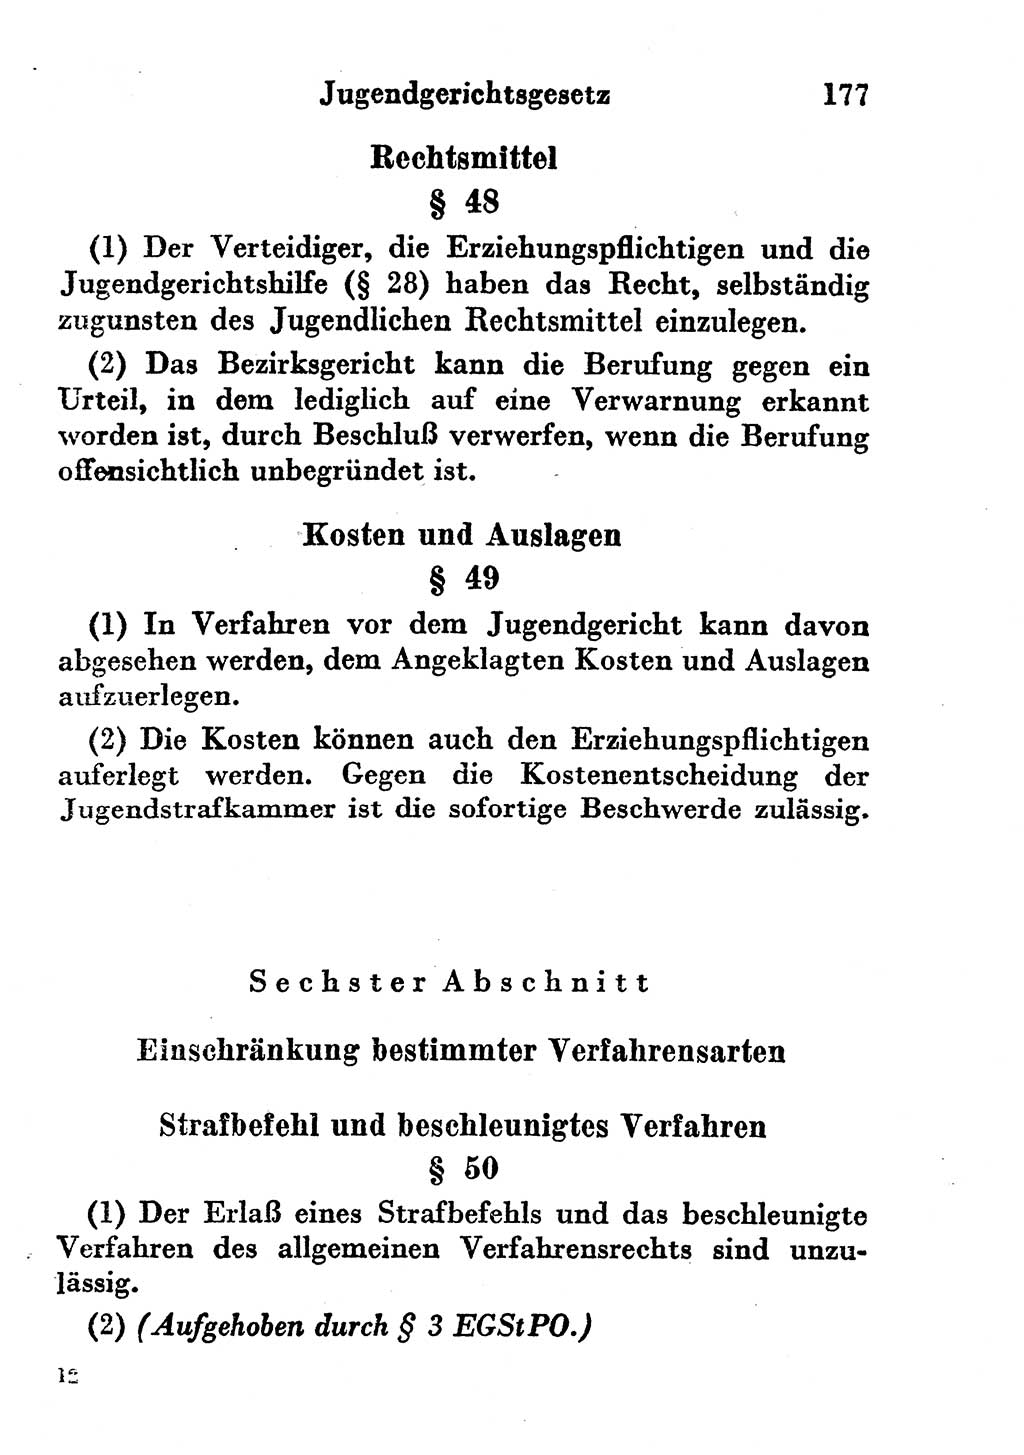 Strafgesetzbuch (StGB) und andere Strafgesetze [Deutsche Demokratische Republik (DDR)] 1956, Seite 177 (StGB Strafges. DDR 1956, S. 177)